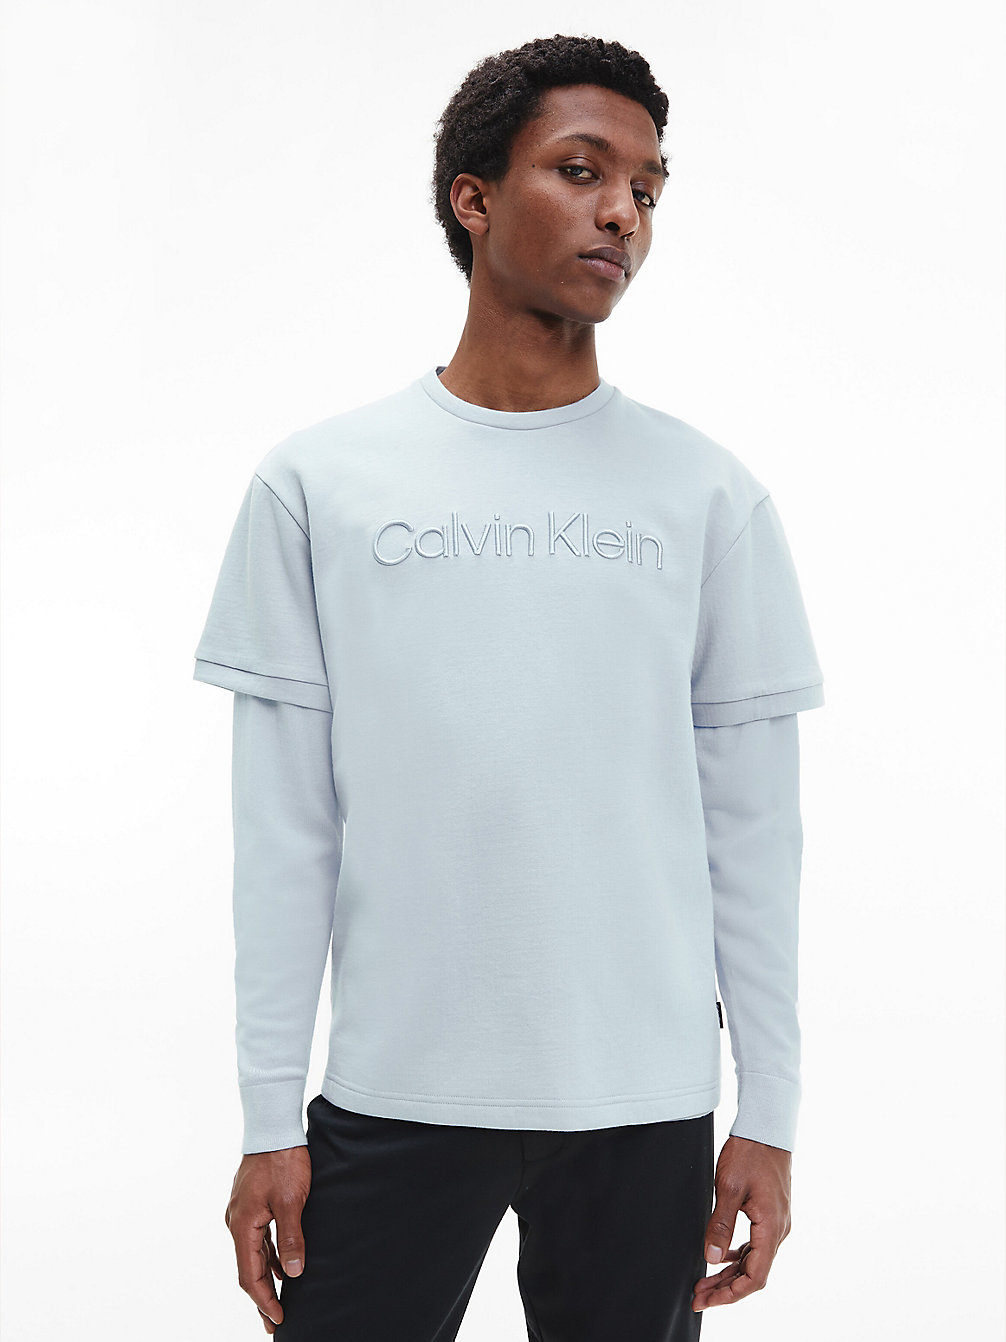 BAYSHORE BLUE Spacer Logo T-Shirt undefined men Calvin Klein